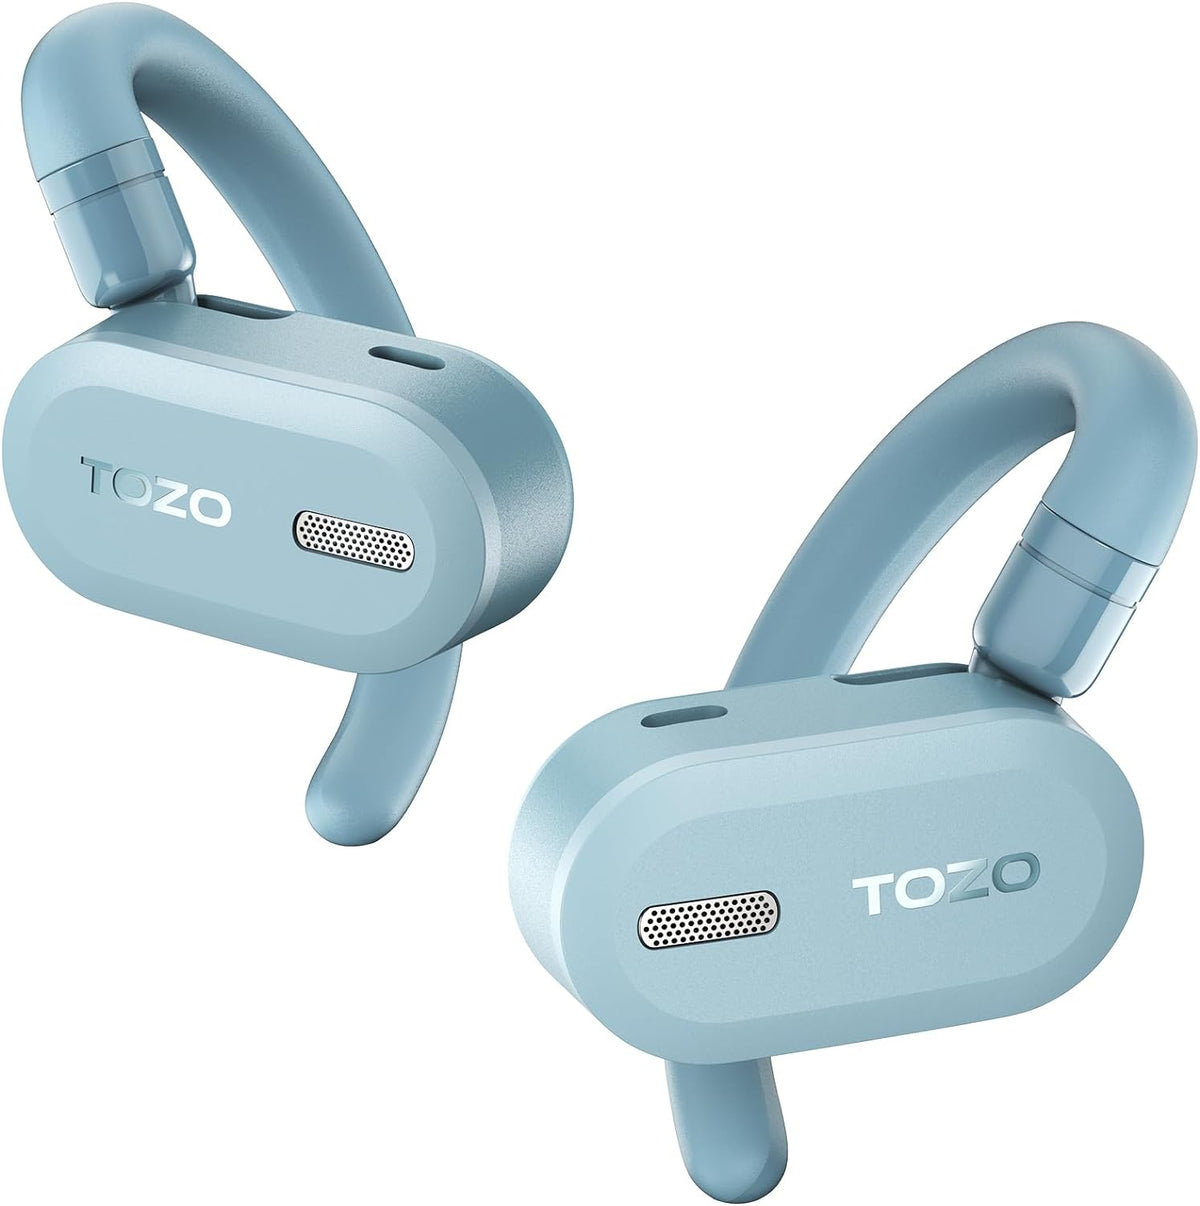 TOZO Open Buds-Lightweight True Open Ear Wireless Earbuds-Blue